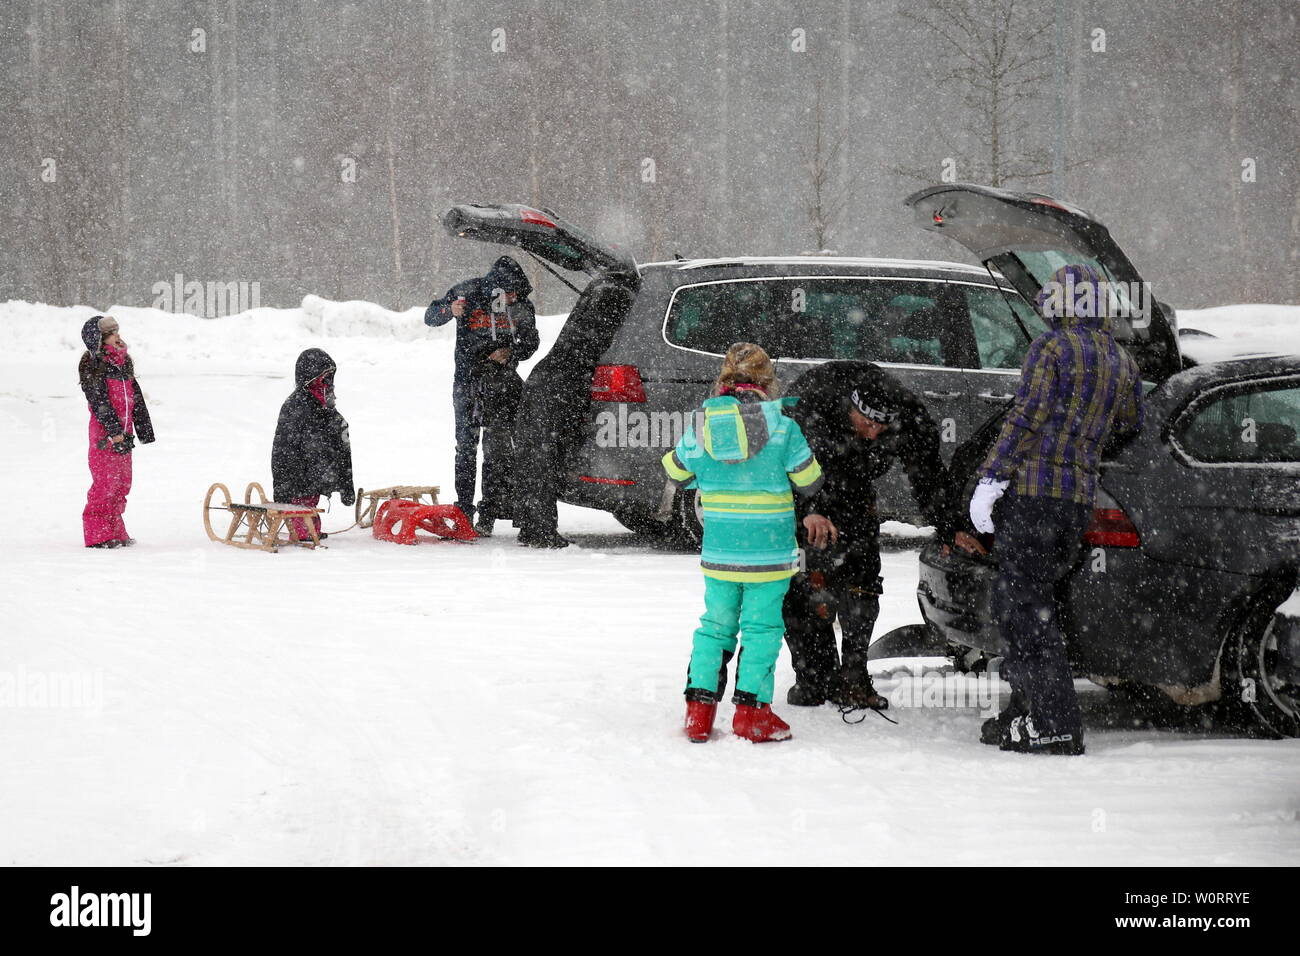 Wintersportler rüsten sich zur Freude der Kinder für einen Skitag     Wintereinbruch im Hochschwarzwald (Baden-Württemberg) - In der Feldbergregion ist der Winter mit kräftigen Schneeschauern zurückgekehrt. Wie hier in Feldberg-Bärental kommt es nach massiven Schneefällen am Samstagvormittag zu erheblichen Verkehrsproblemen. Räumfahrzeuge sind im Einsatz, doch die steckengebliebenen Autofahrer verhindern die Räumarbeiten. Busse mussten Schneeketten montieren, querstehende LKW´s mit glatten Reifen taten ihr übriges. Stock Photo